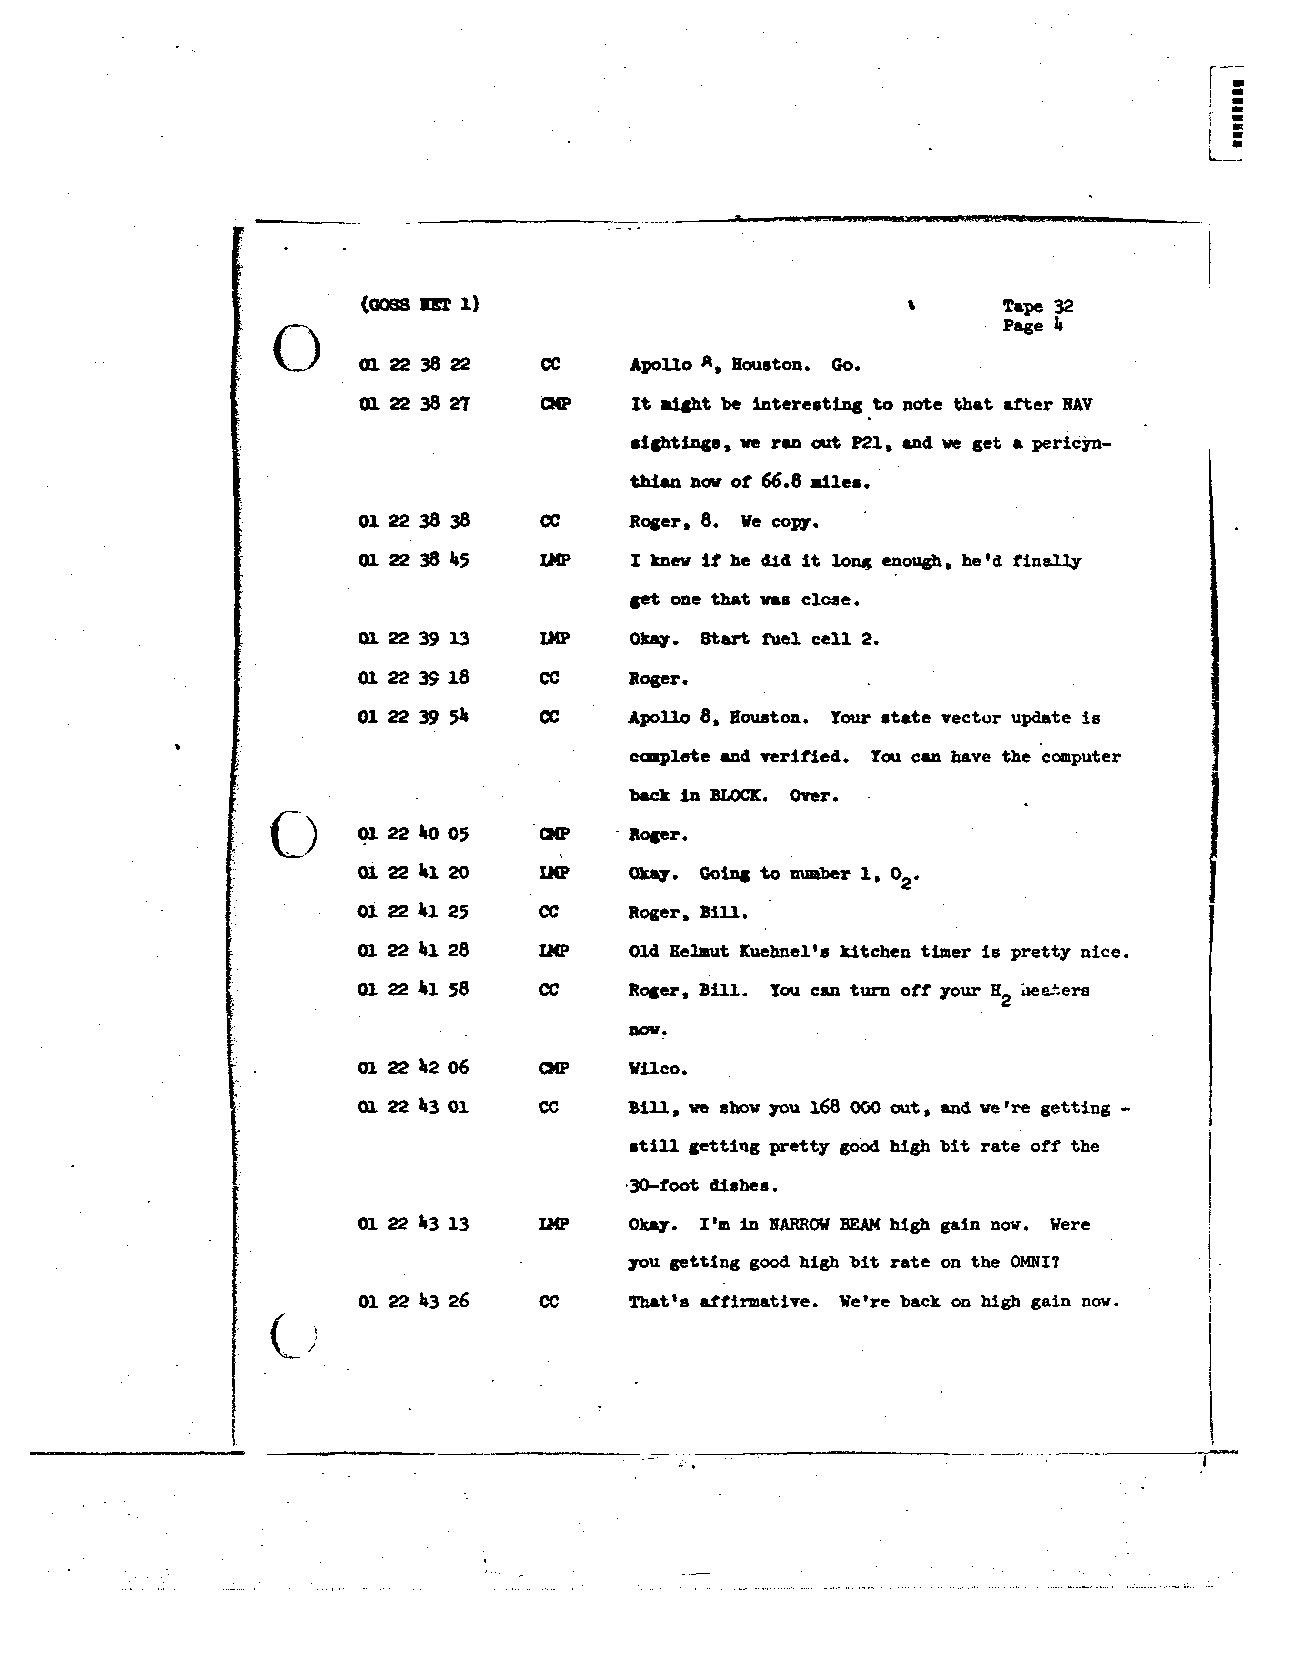 Page 248 of Apollo 8’s original transcript